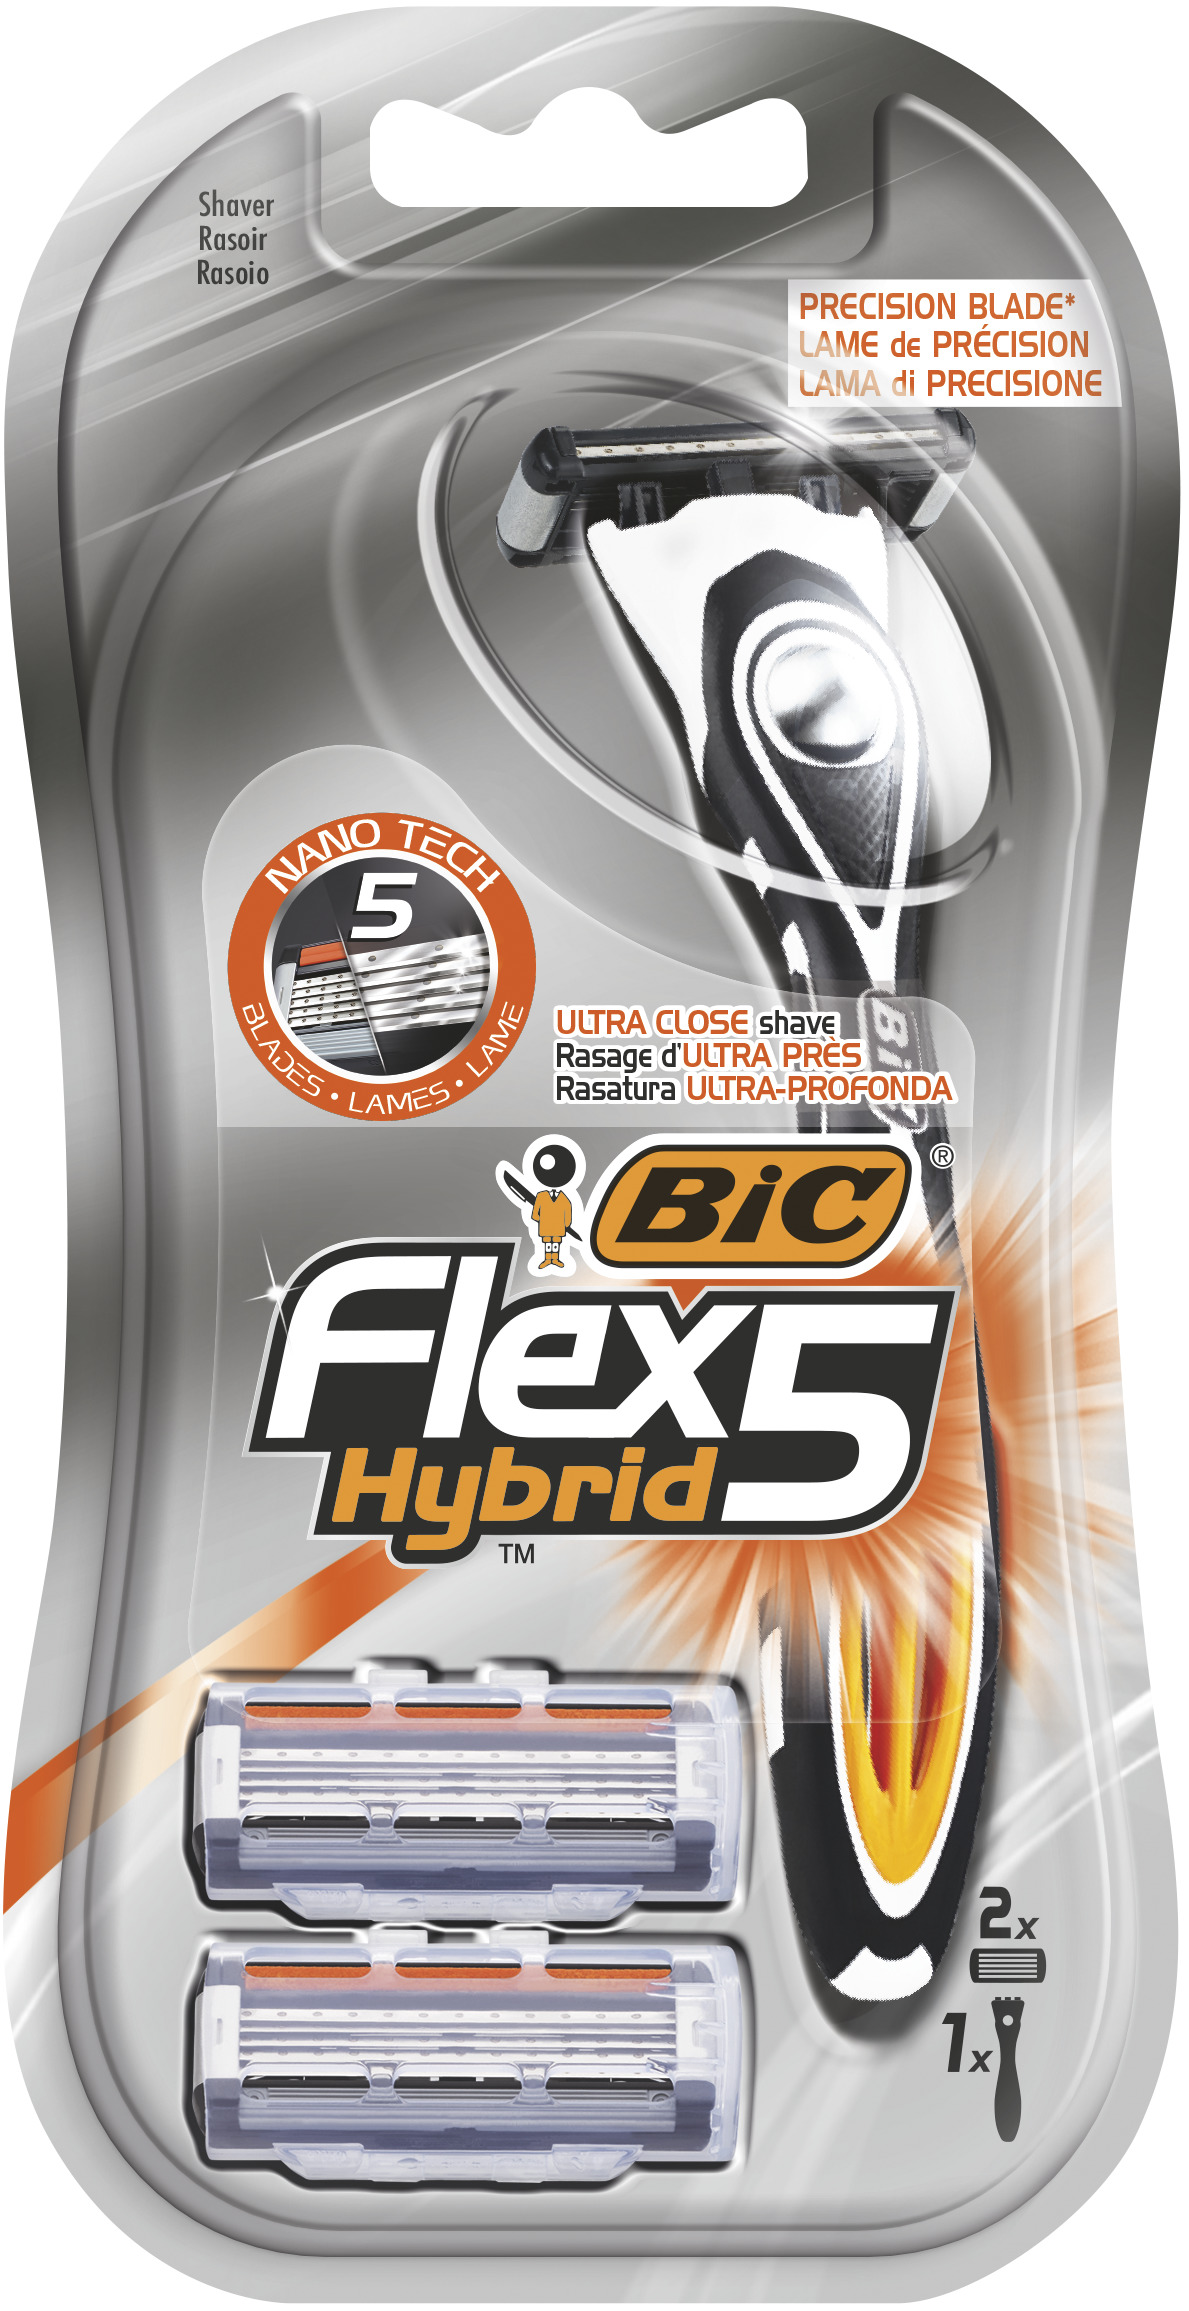 Станок для бритья BIC Flex 5 Hybrid + 2 кассеты станок для бритья bic flex3 hybrid для мужчин 3 лезвия 4 сменные кассеты 8930161